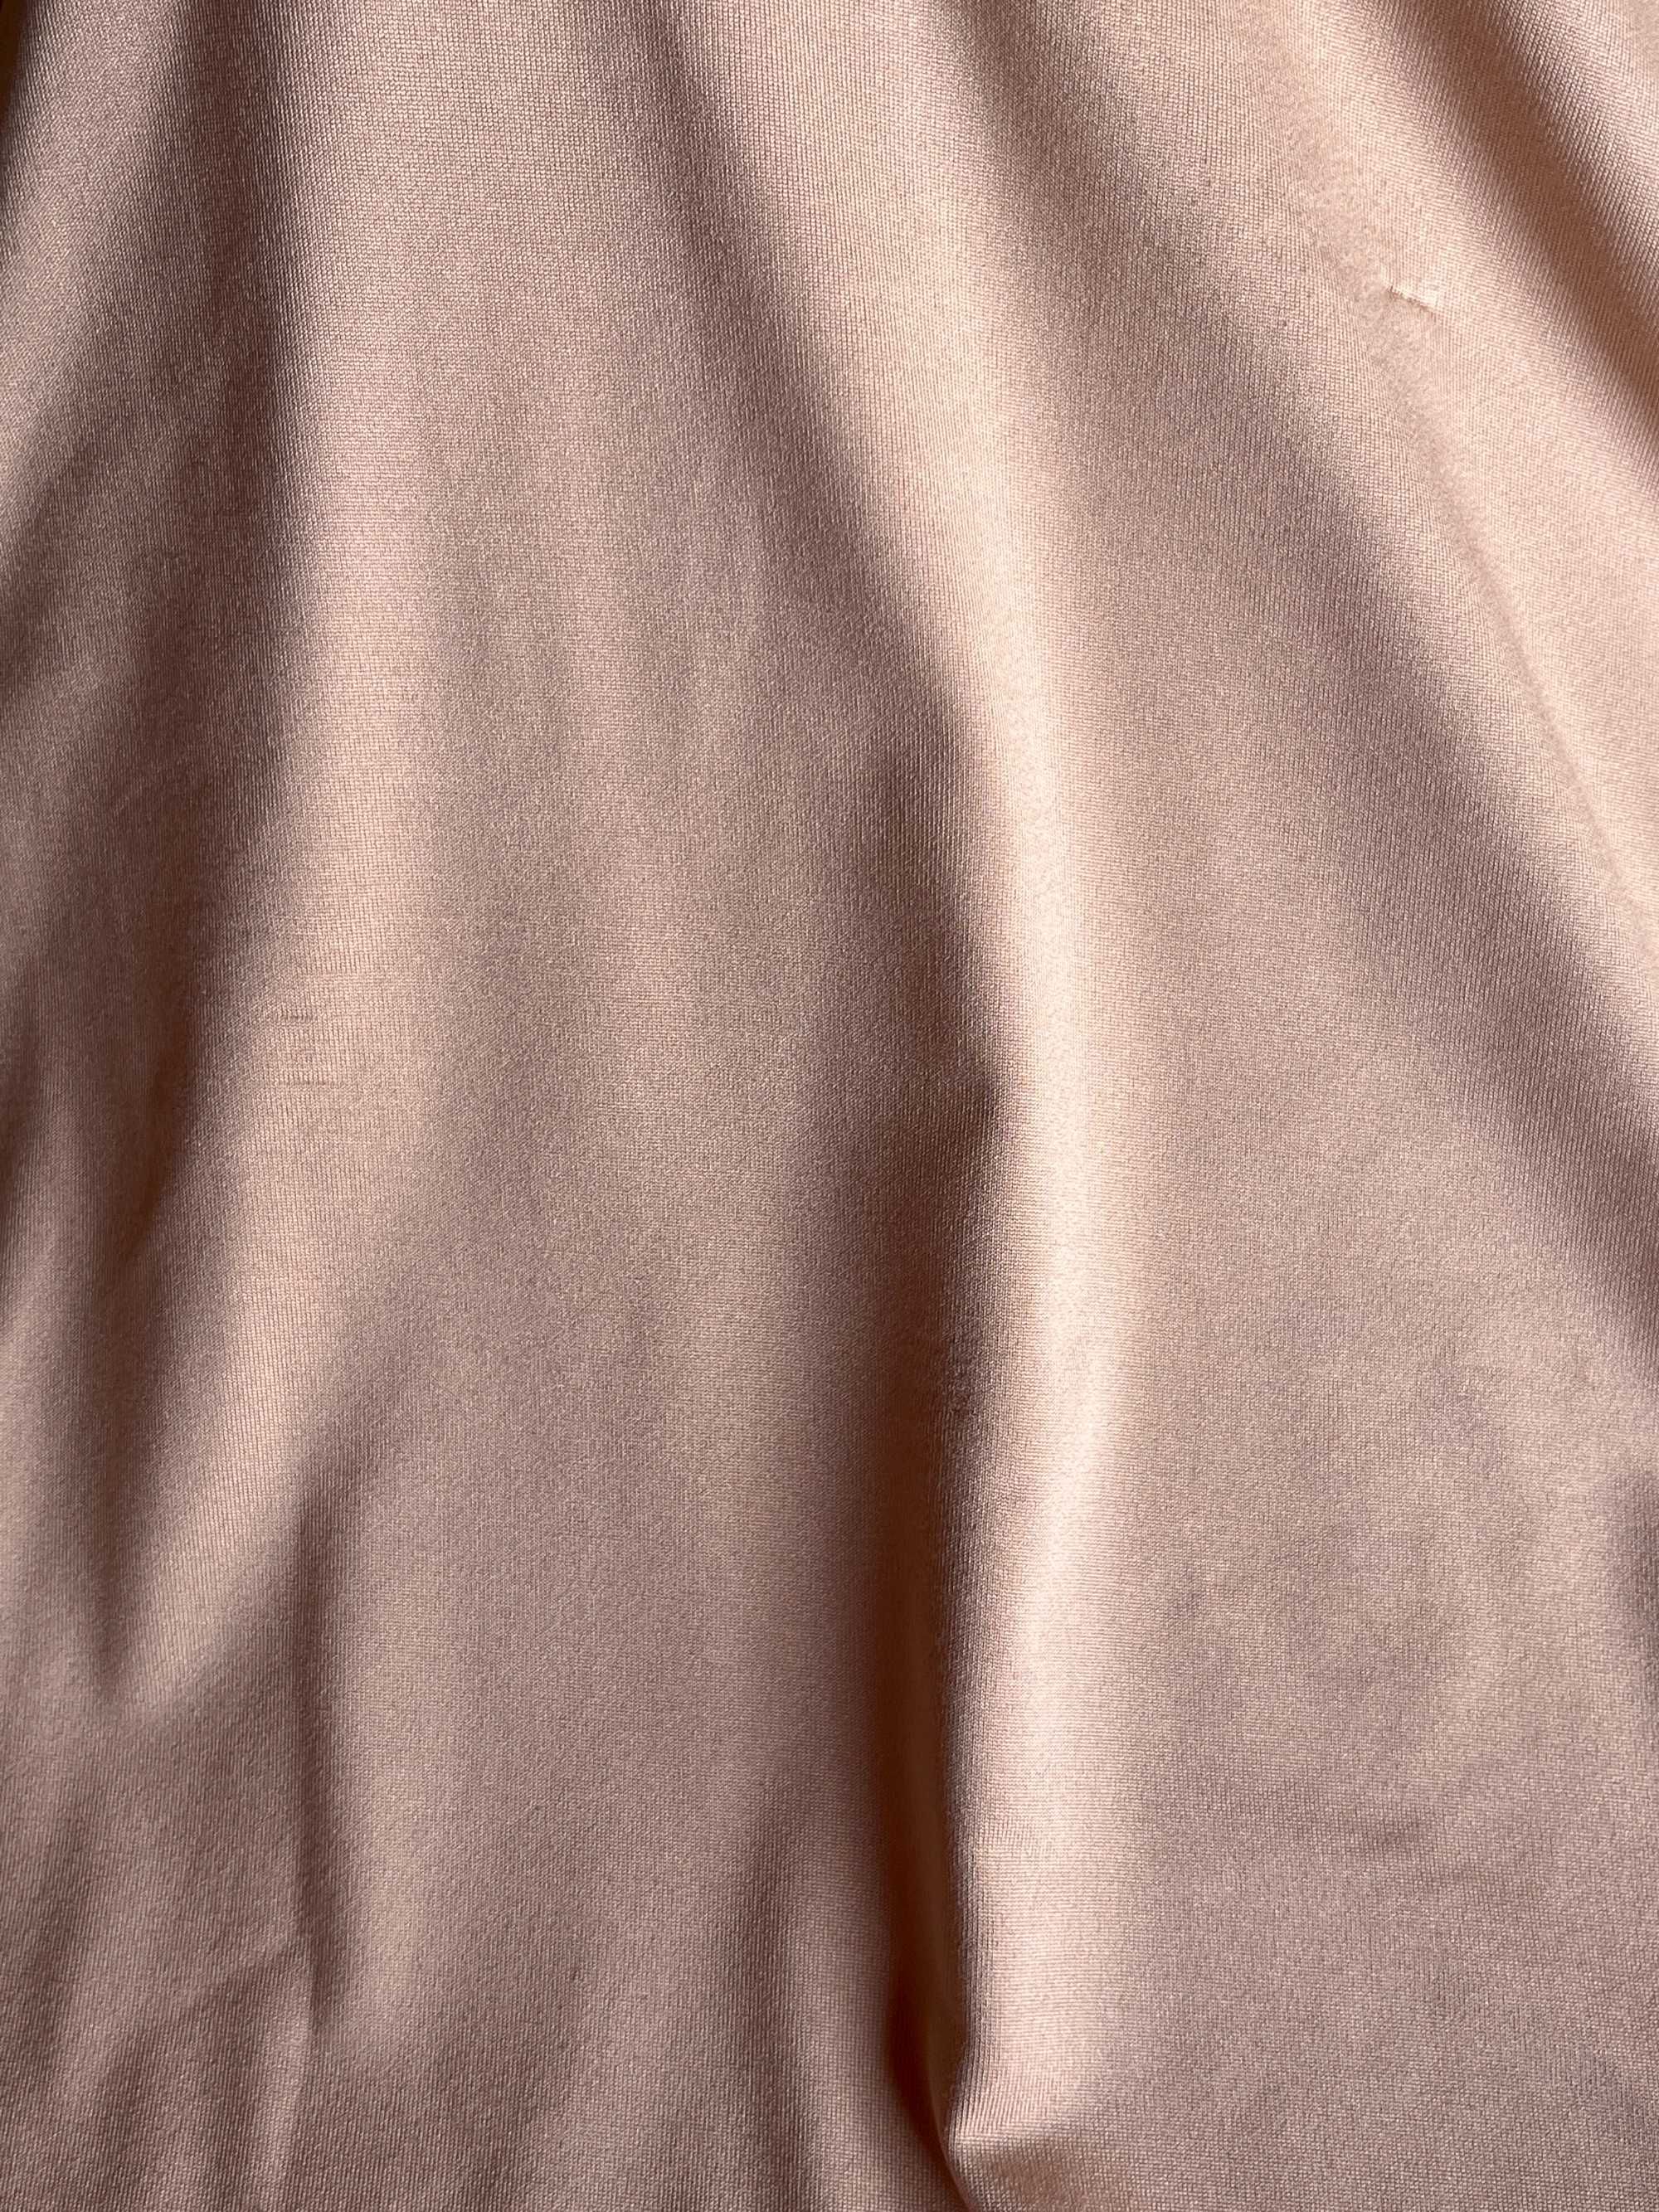 Водолазка женская гольф бежевого персикового цвета befree XL